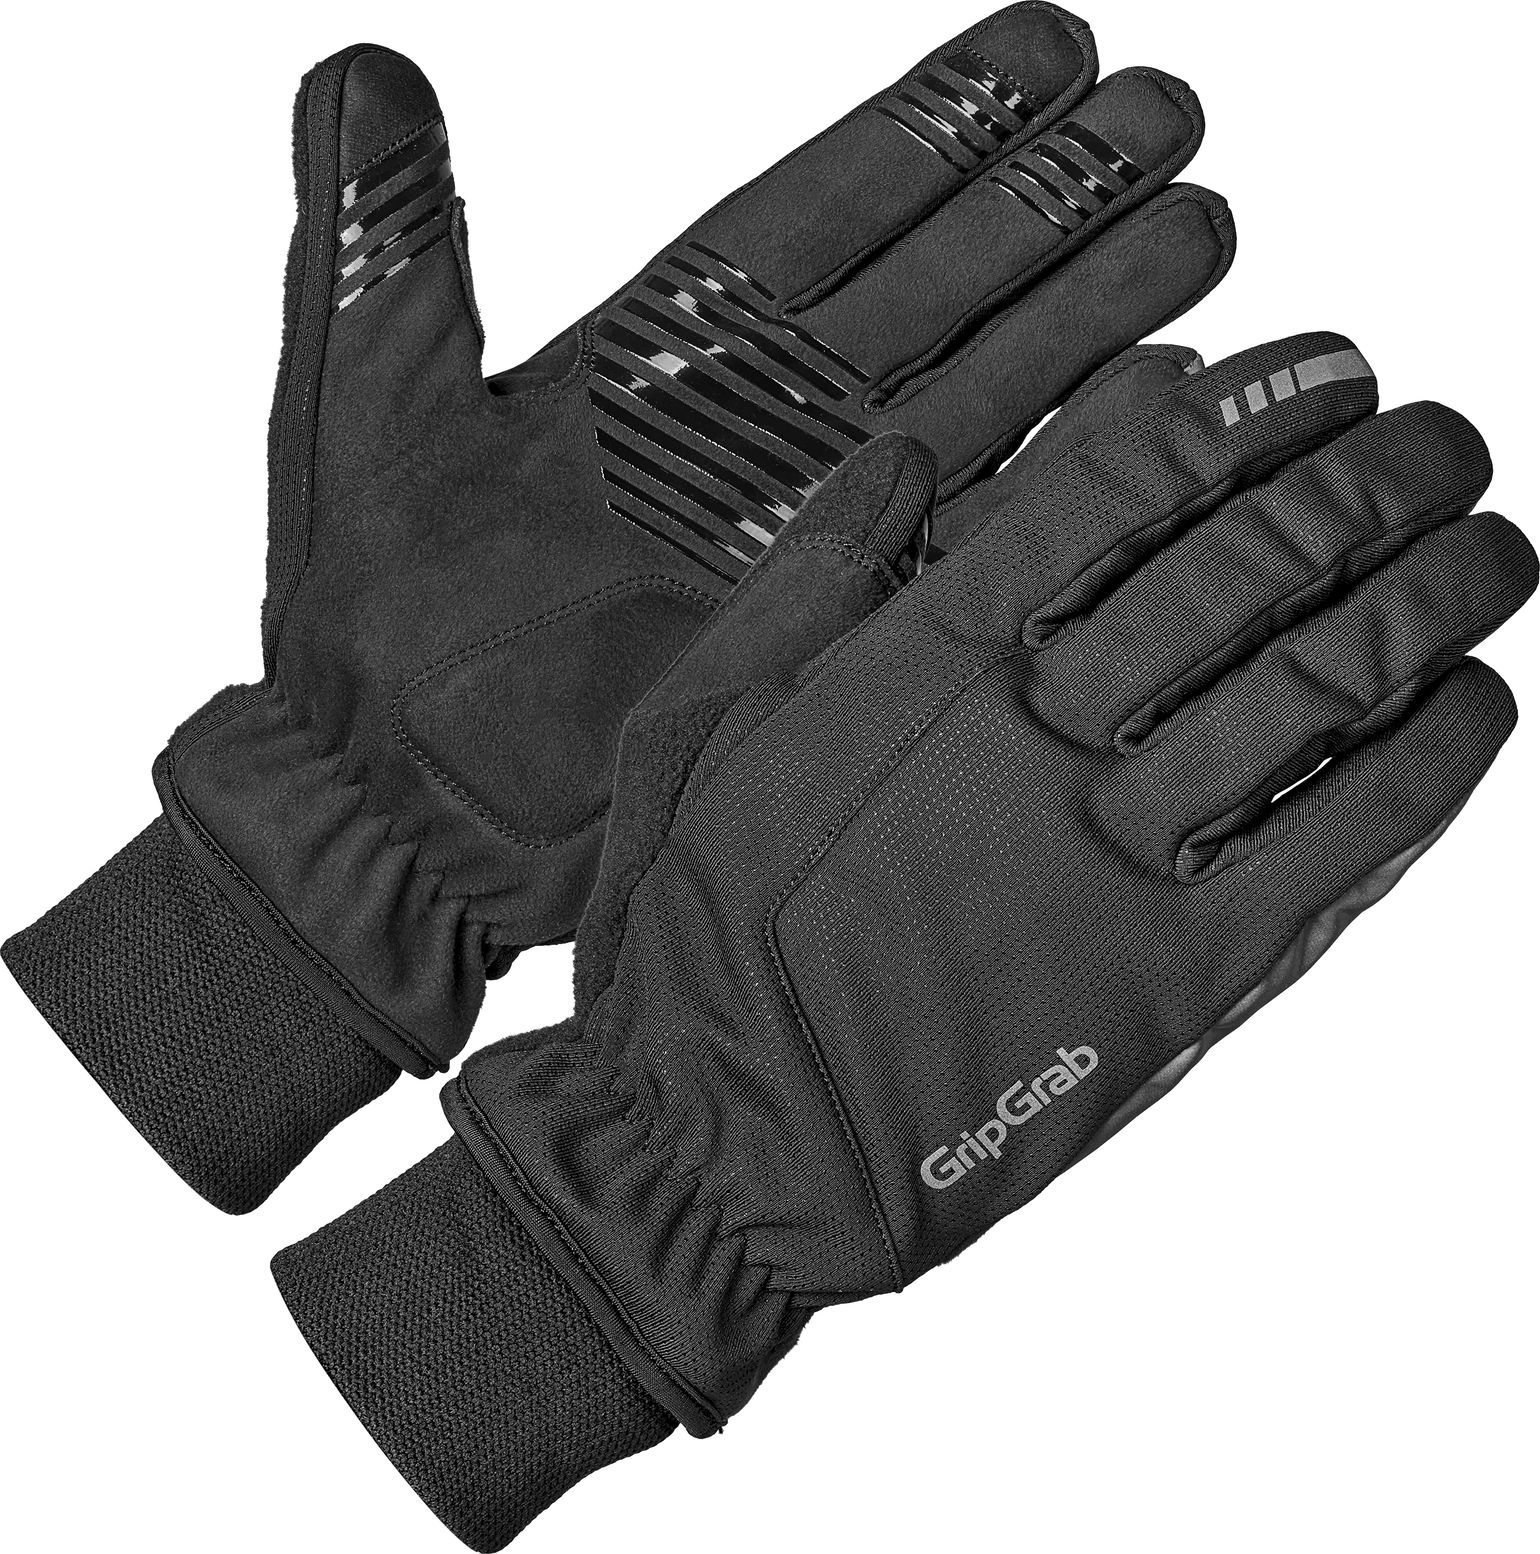 Windster 2 Windproof Winter Gloves Black